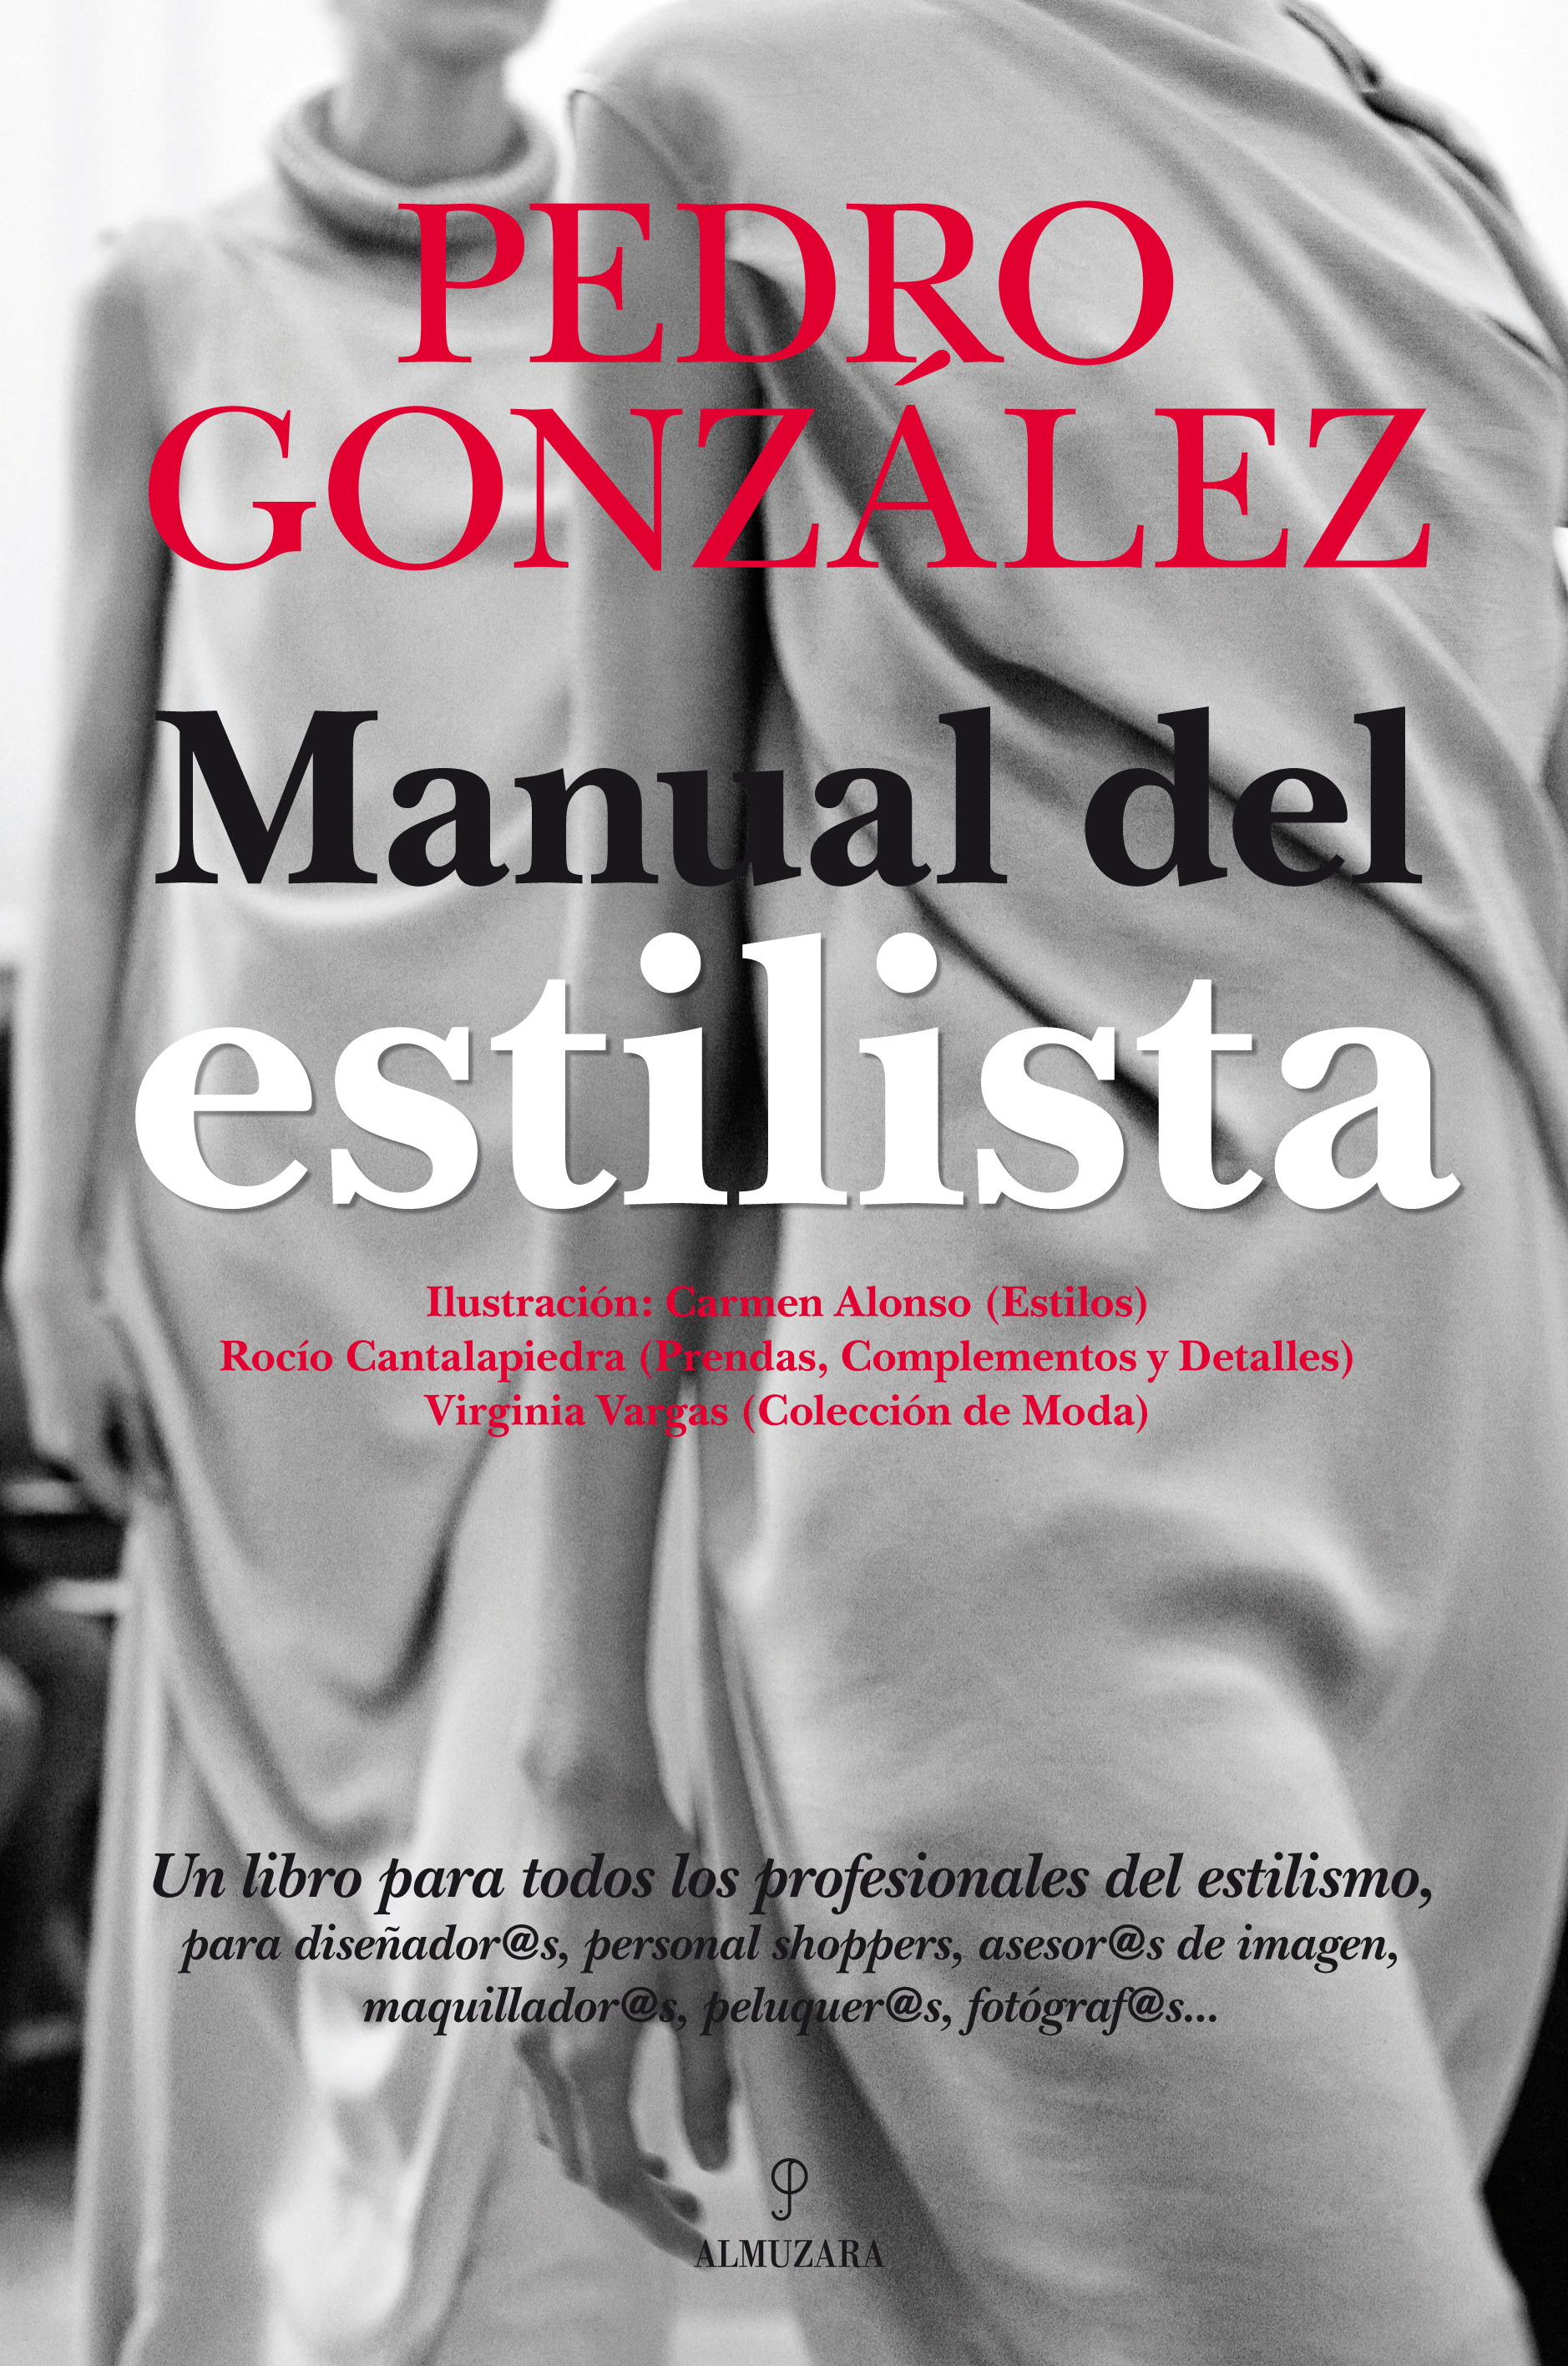 Manual del estilista - Editorial Almuzara